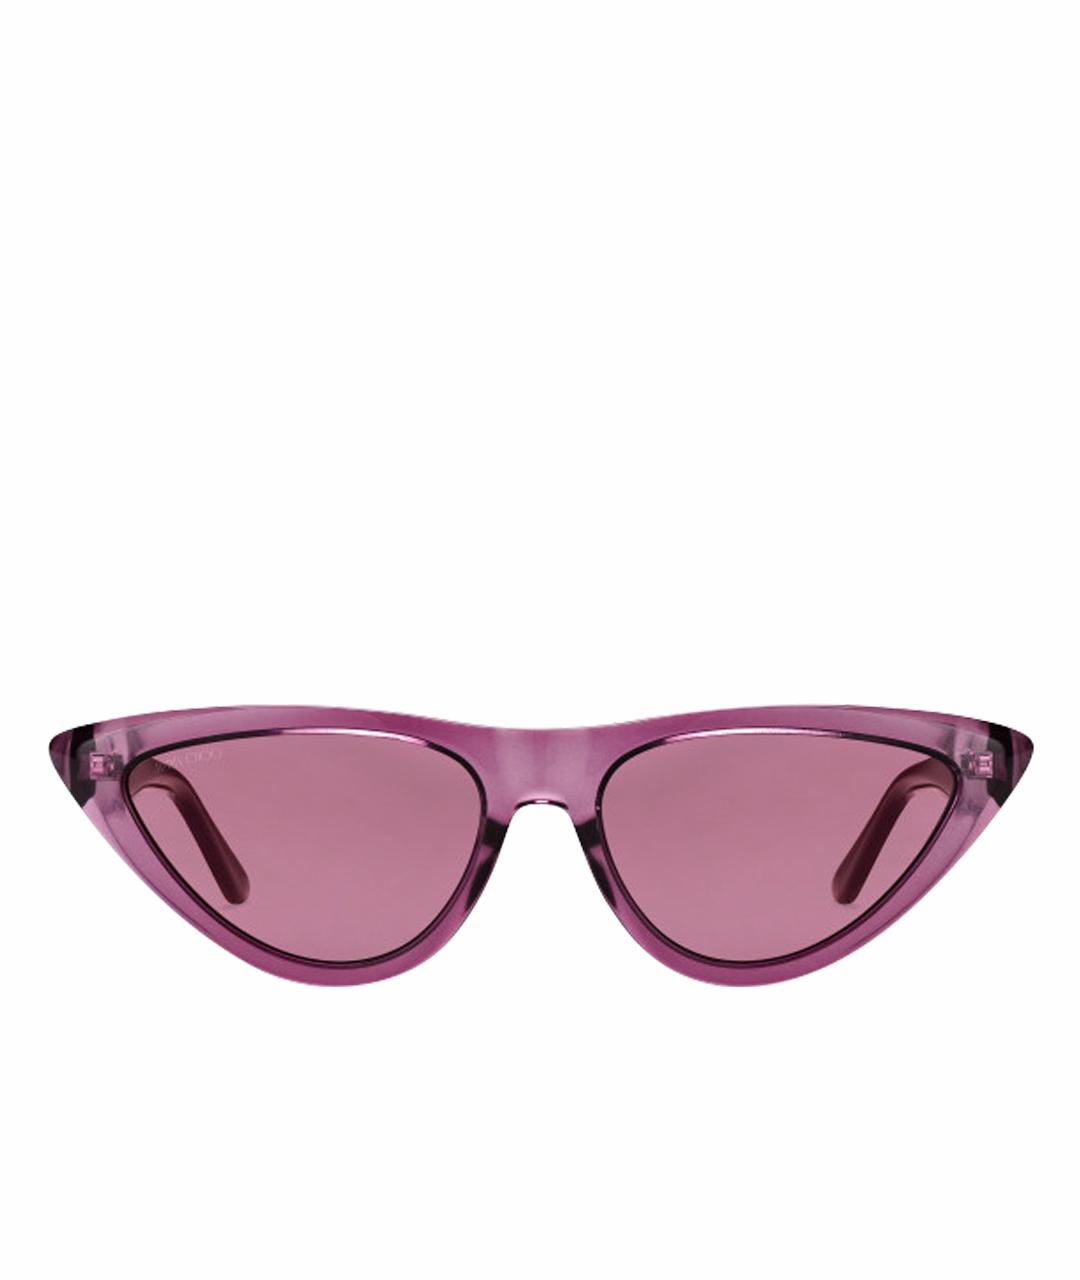 JIMMY CHOO Фиолетовые пластиковые солнцезащитные очки, фото 1